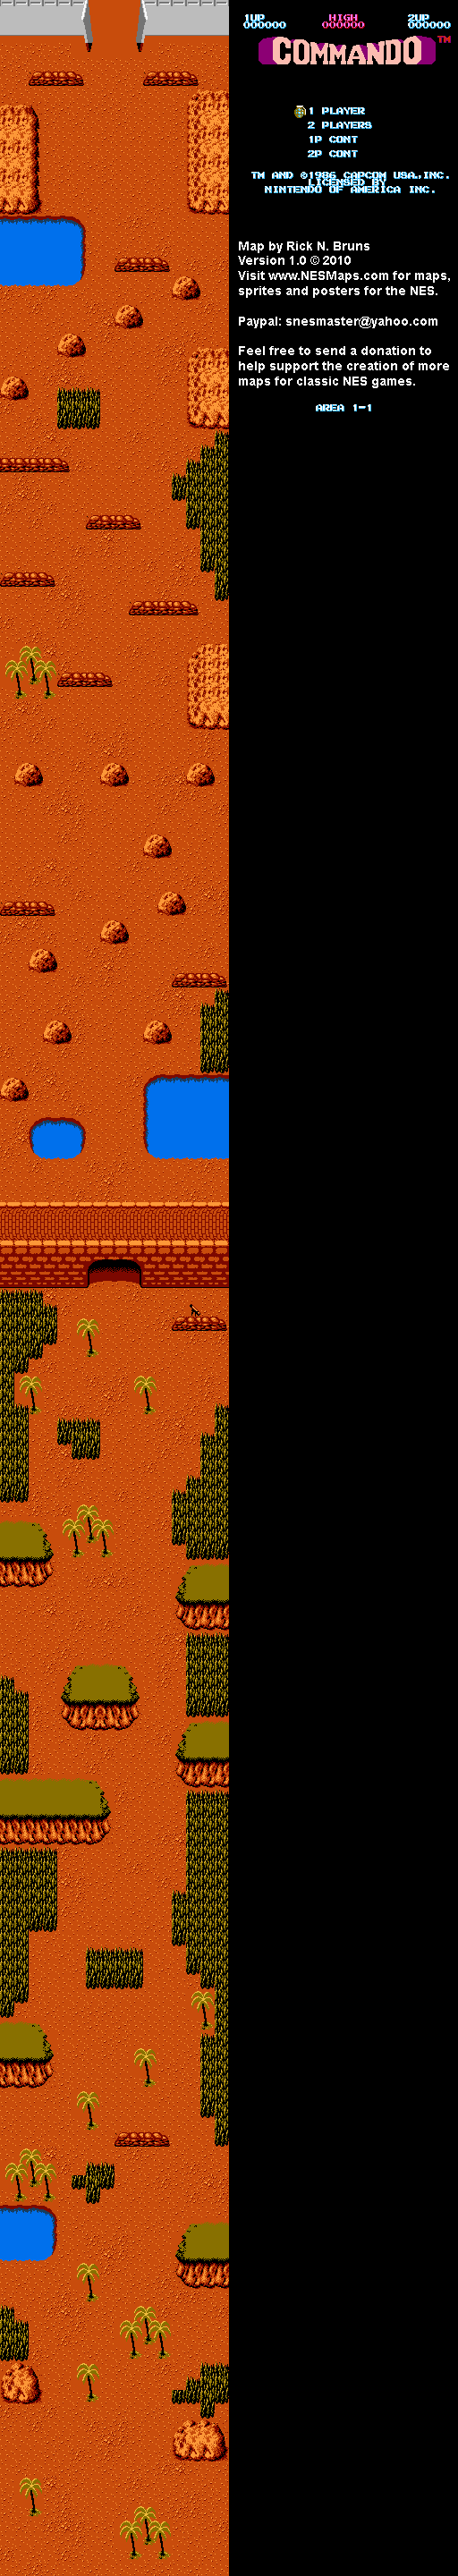 Commando - Area 1-1 - Nintendo NES Map BG